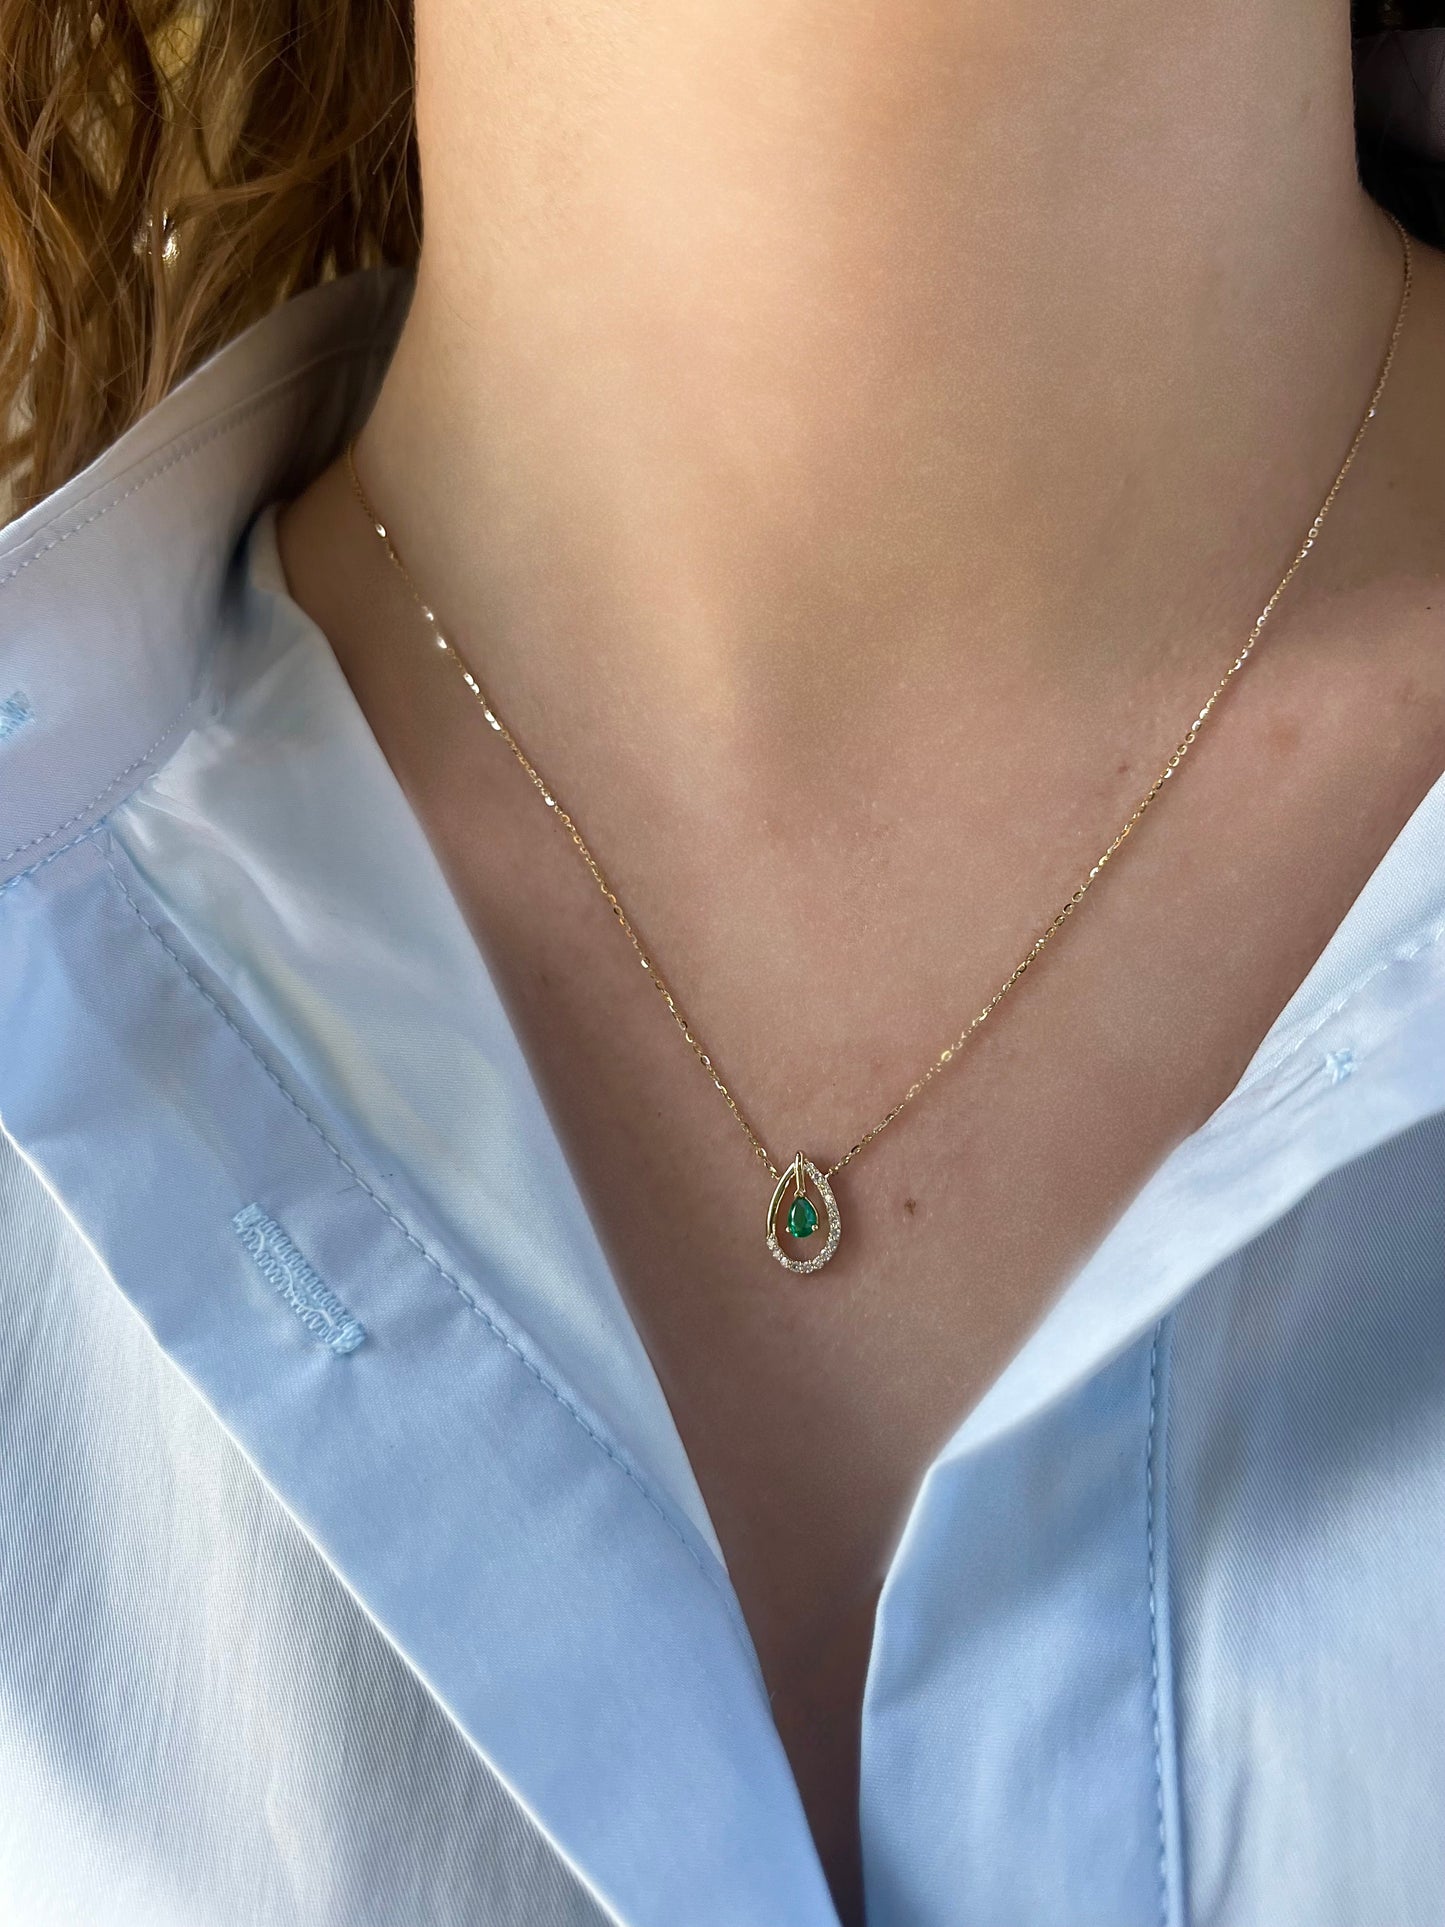 Diamond Emerald Tear Necklace